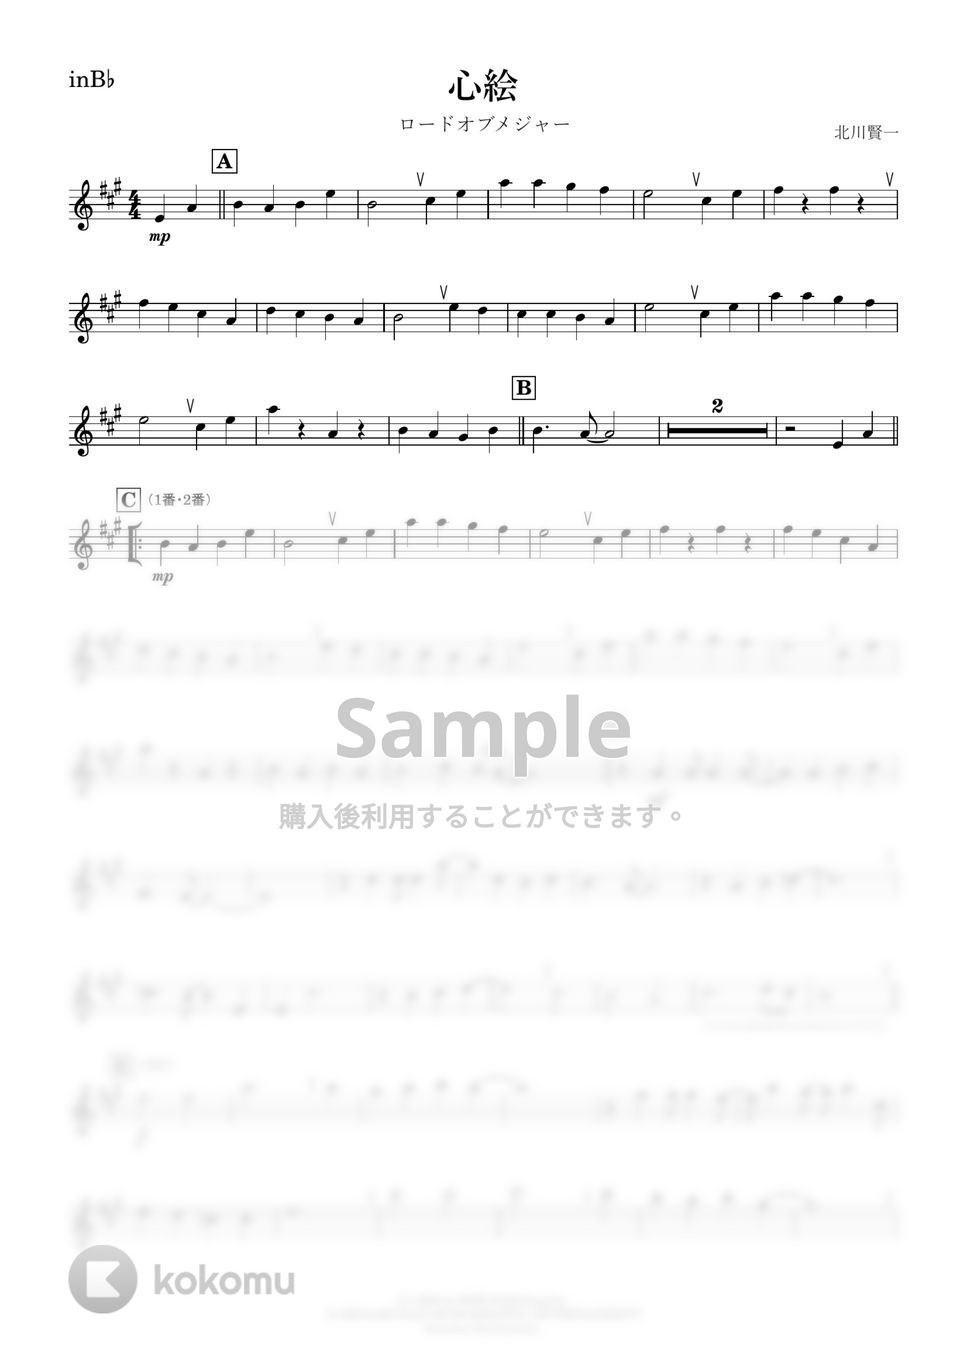 メジャー - 心絵 (B♭) by kanamusic